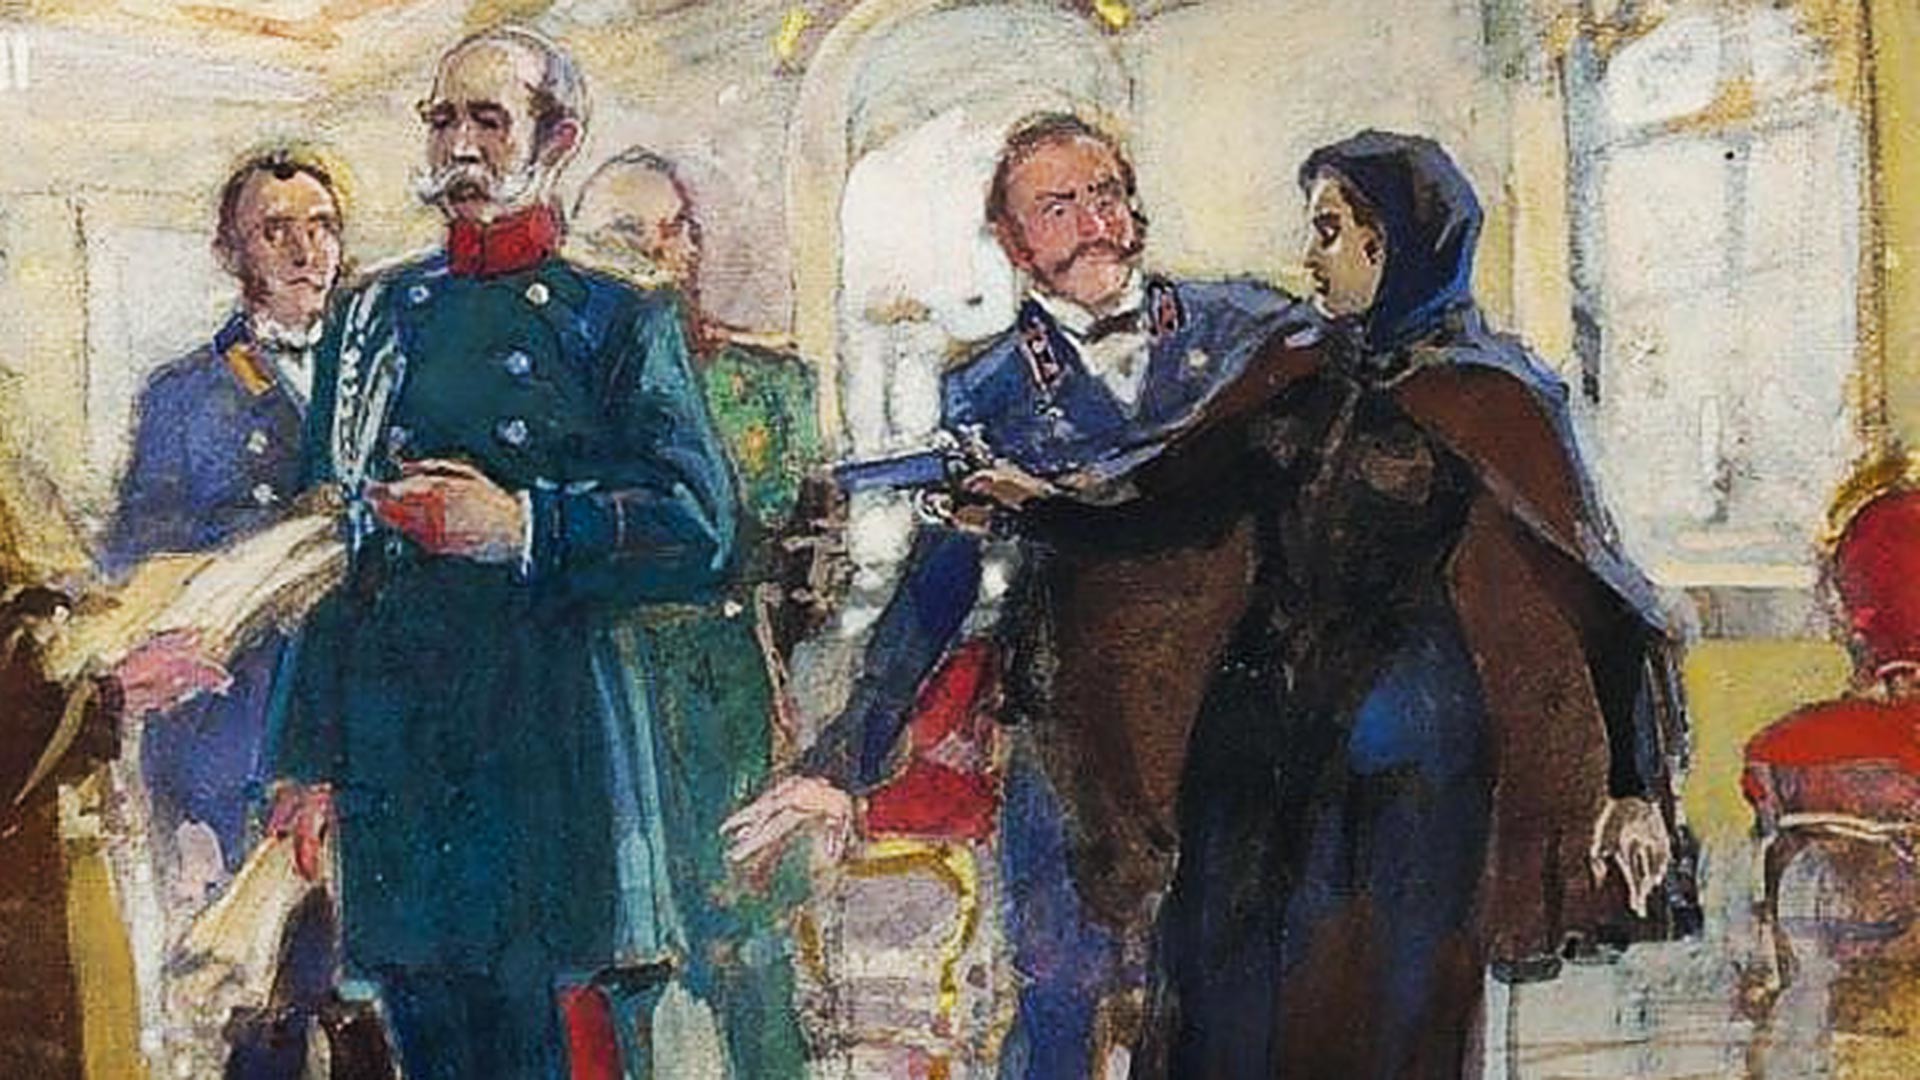 Руската революционерка Вера Засулич (1849-1919), която се опитва да убие Фьодор Трепов (1803-1889), началник на полицията в Санкт Петербург (1860-1878). Тя обаче успява само да го рани. Съдебният процес я оневинява.
